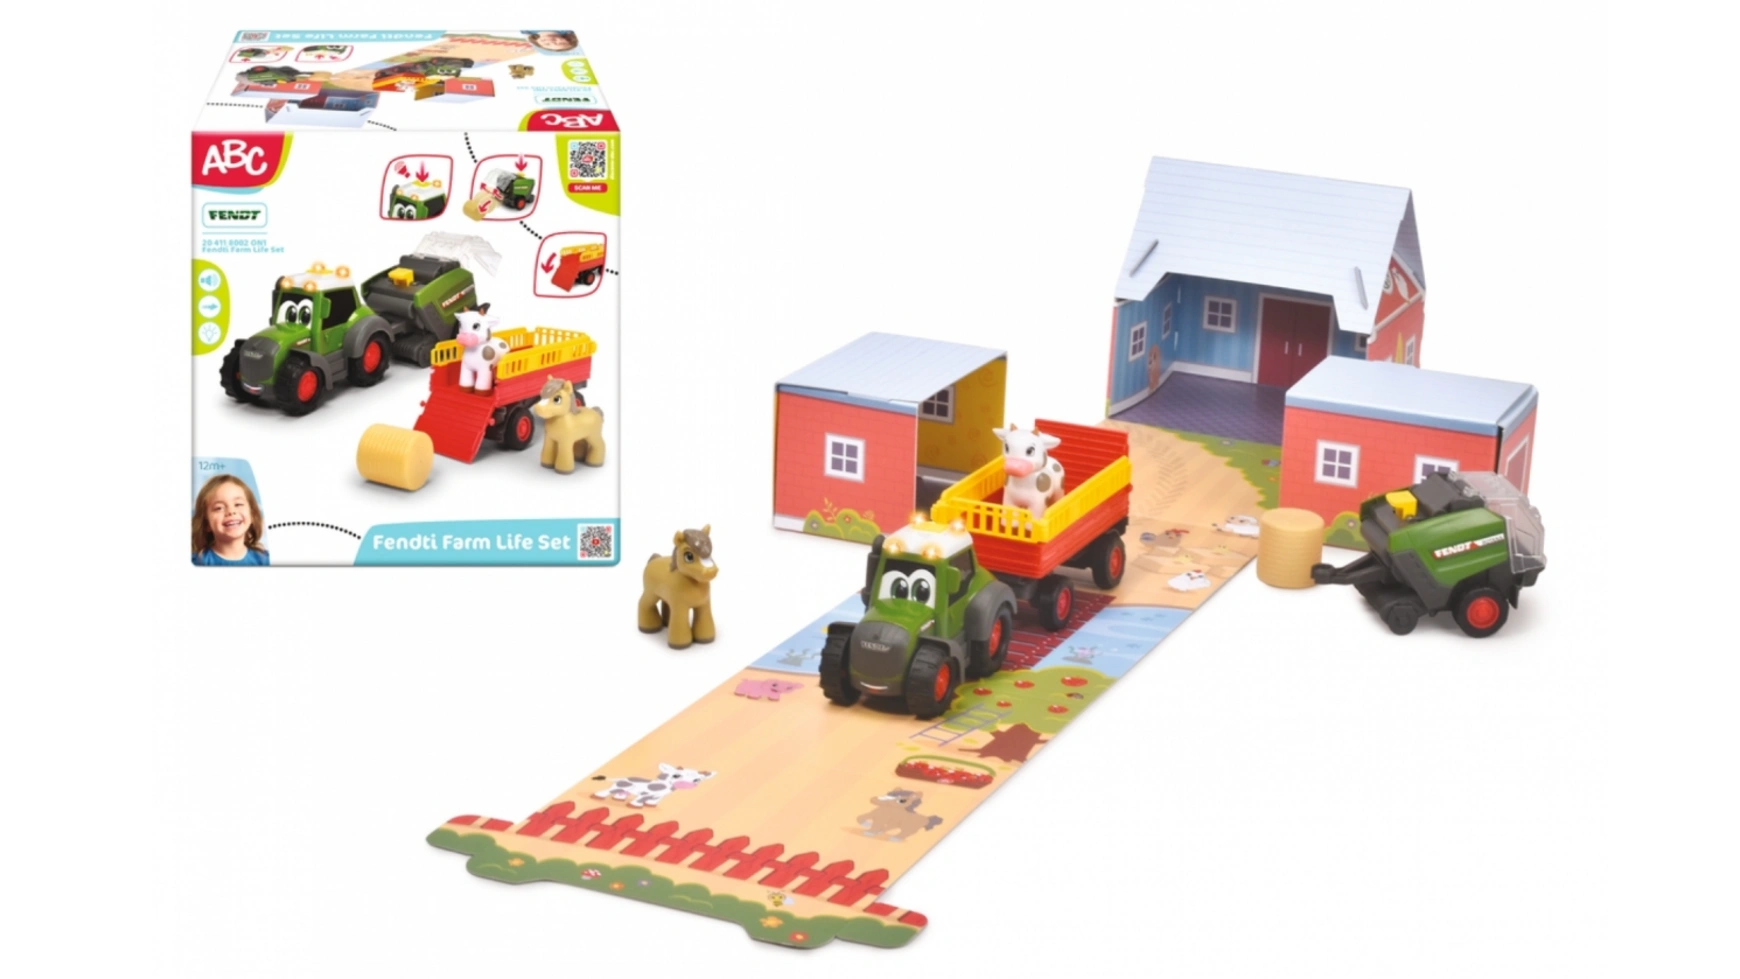 Dickie Toys трактор ABC Fendt с прицепом, пресс-подборщиком для сена и животными (набор диорамы) автомат игрушечный со светом и звуком арт1